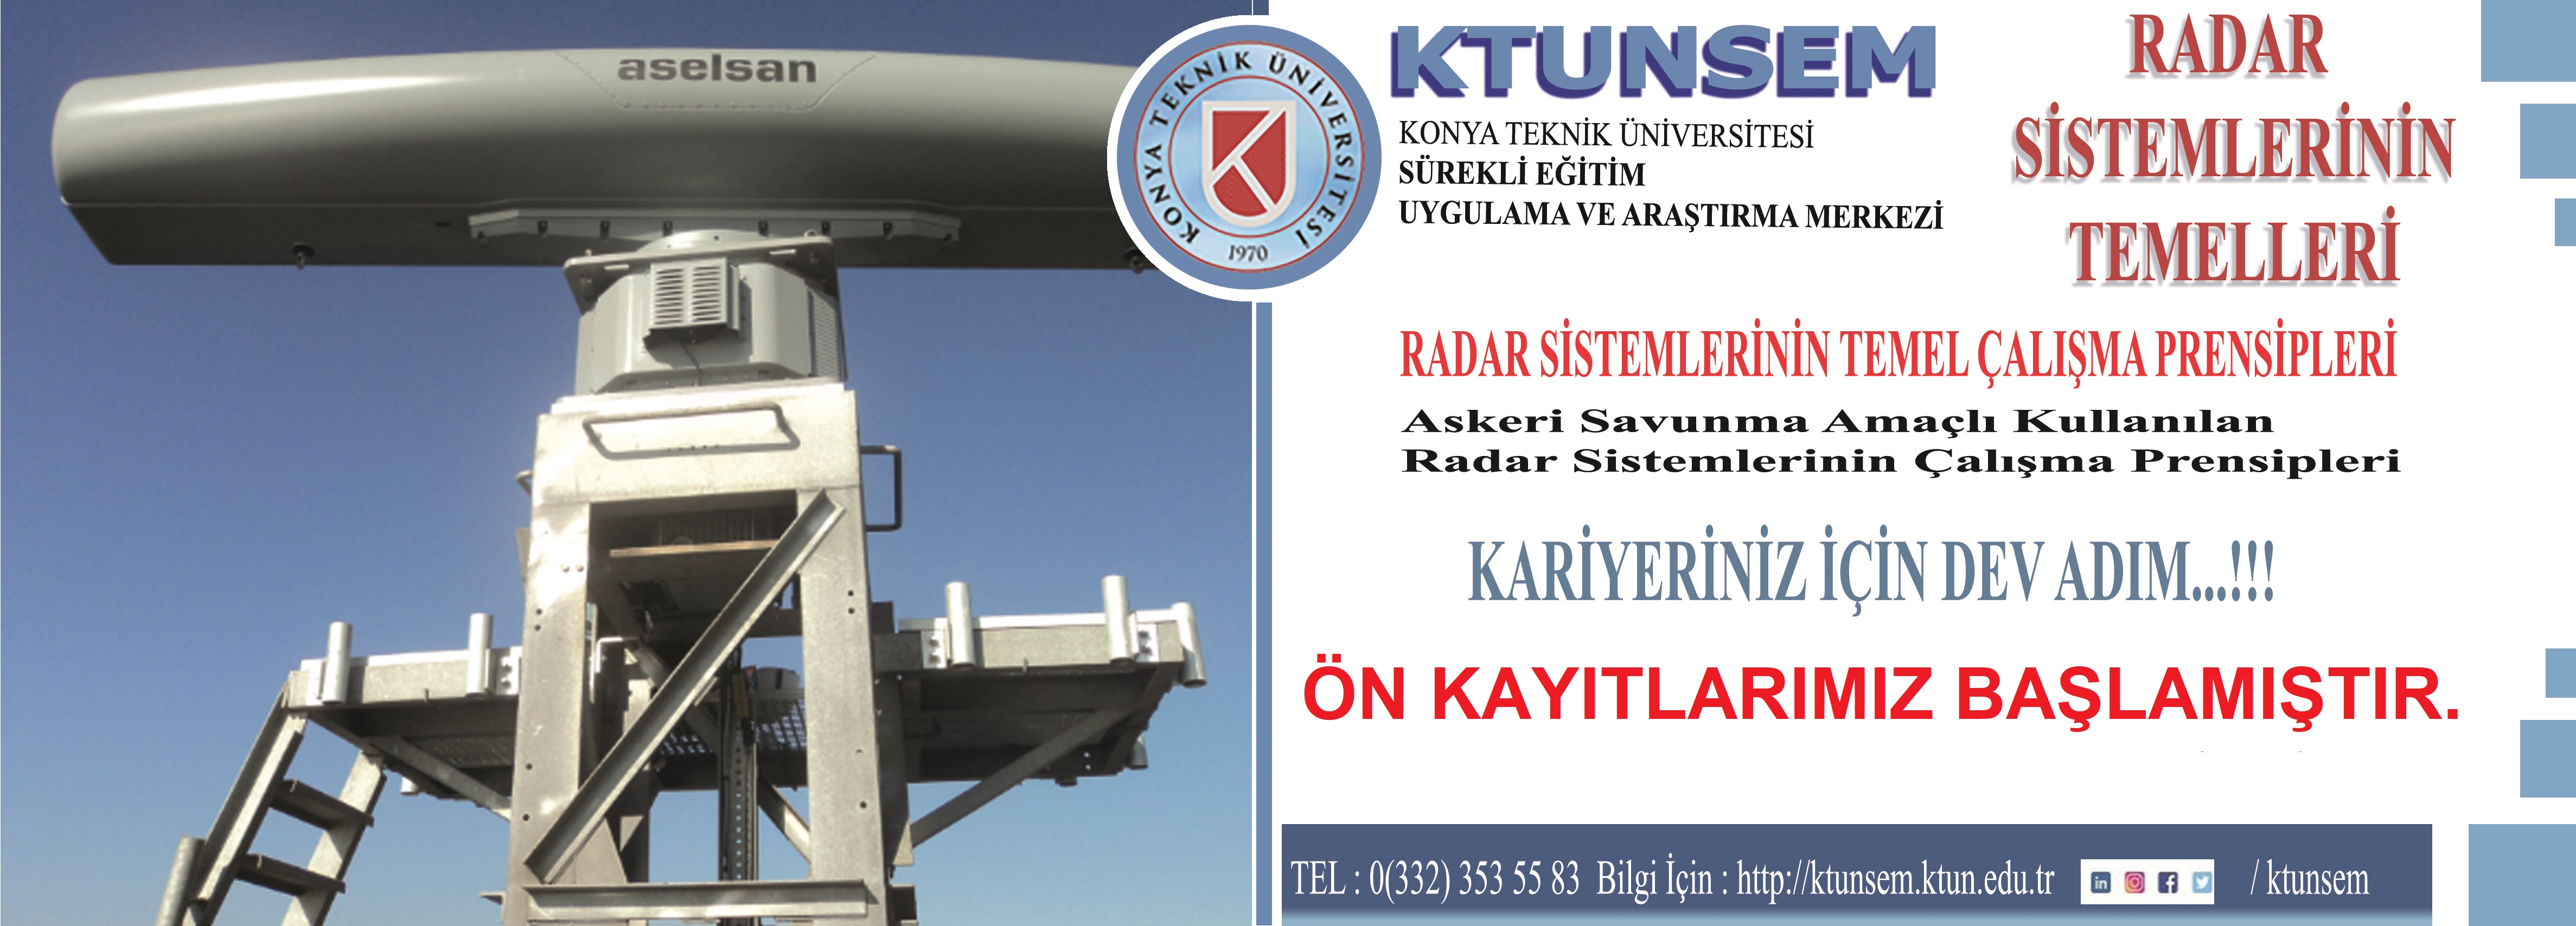 Radar Sistemlerinin Temelleri Eğitimi